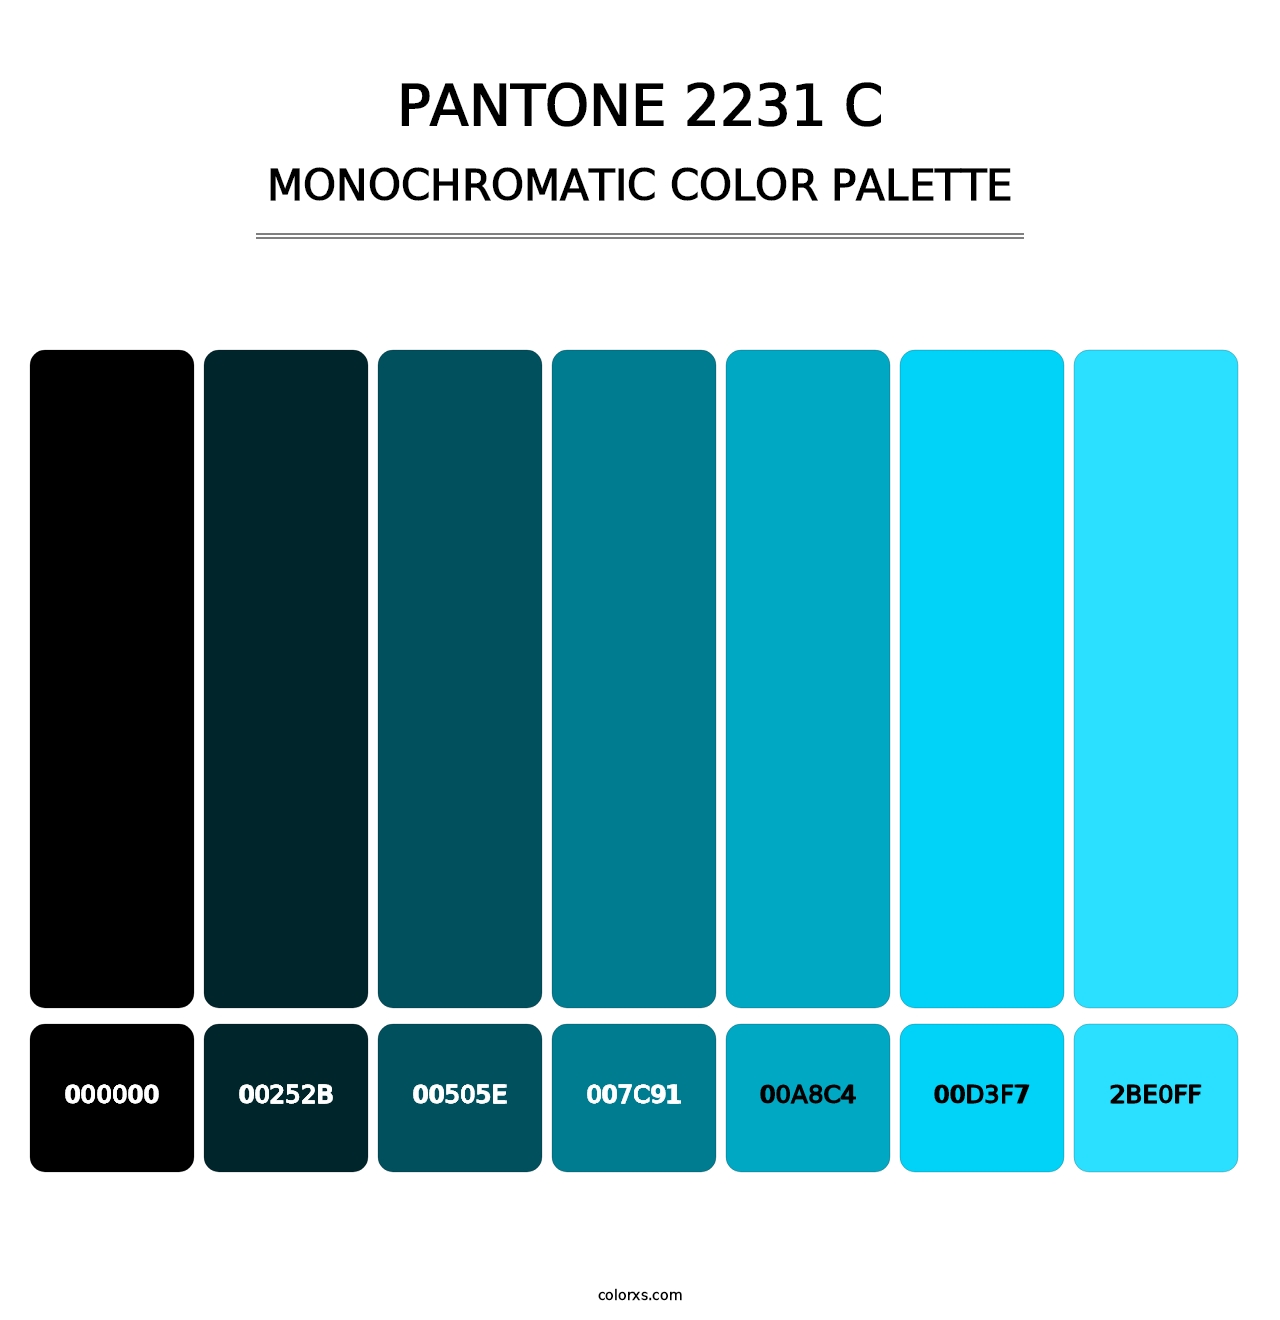 PANTONE 2231 C - Monochromatic Color Palette